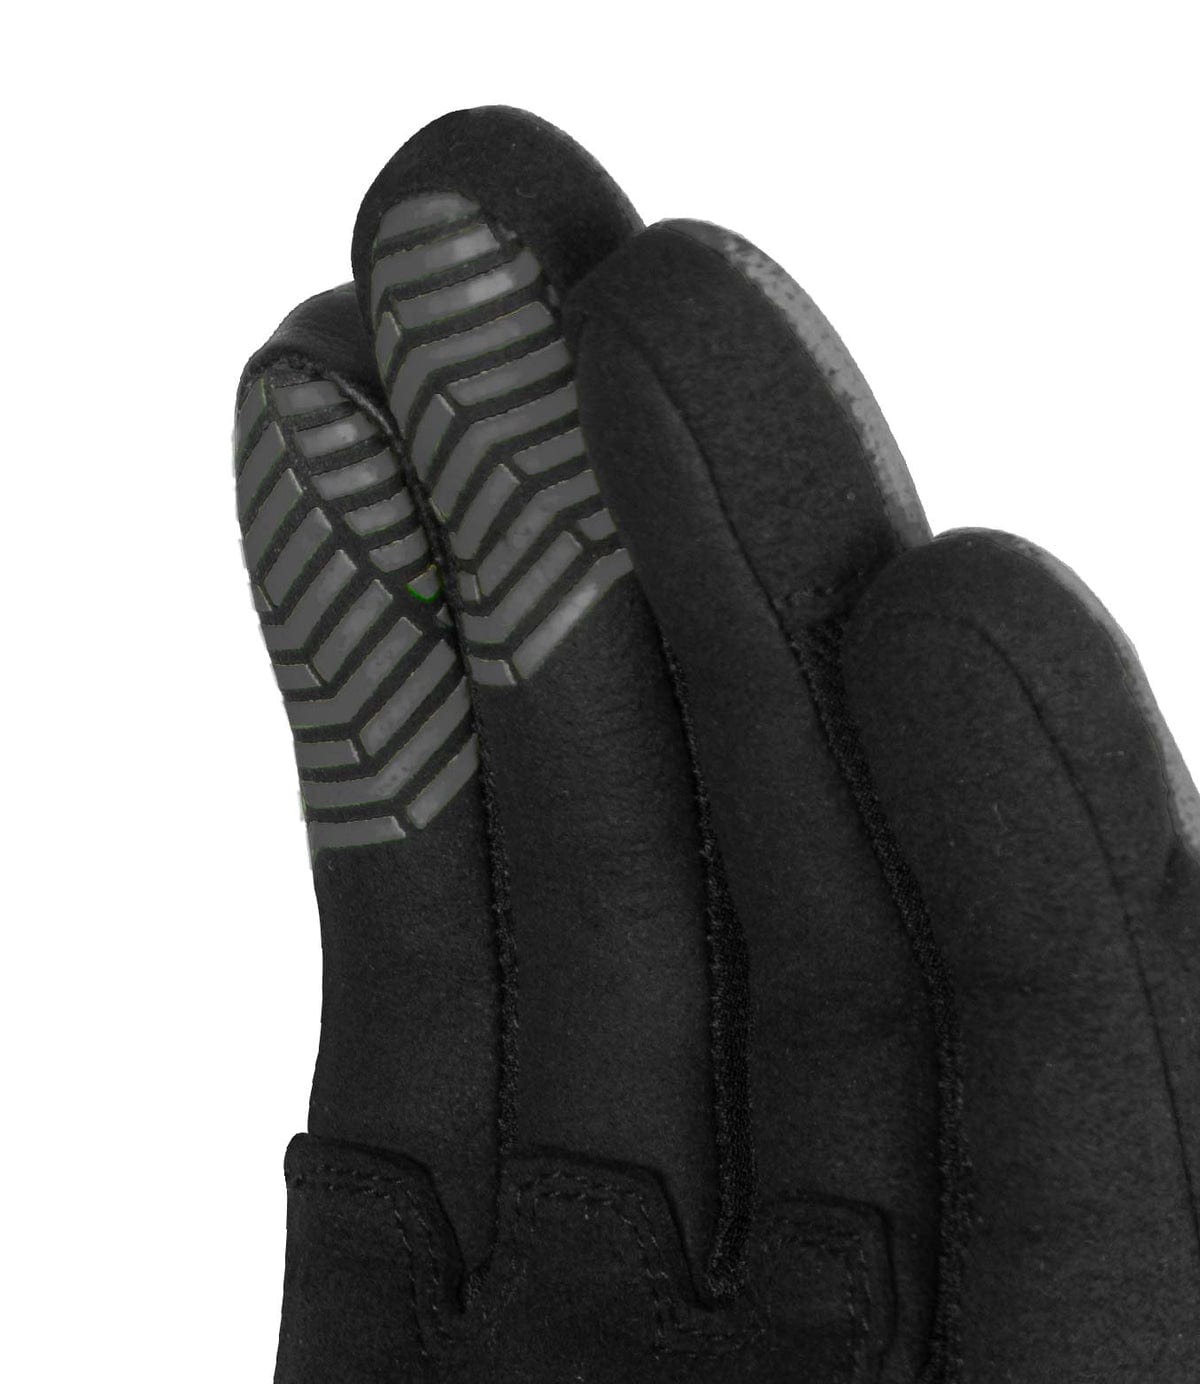 Destination Moto Rynox Helium GT Gloves (Black Grey)